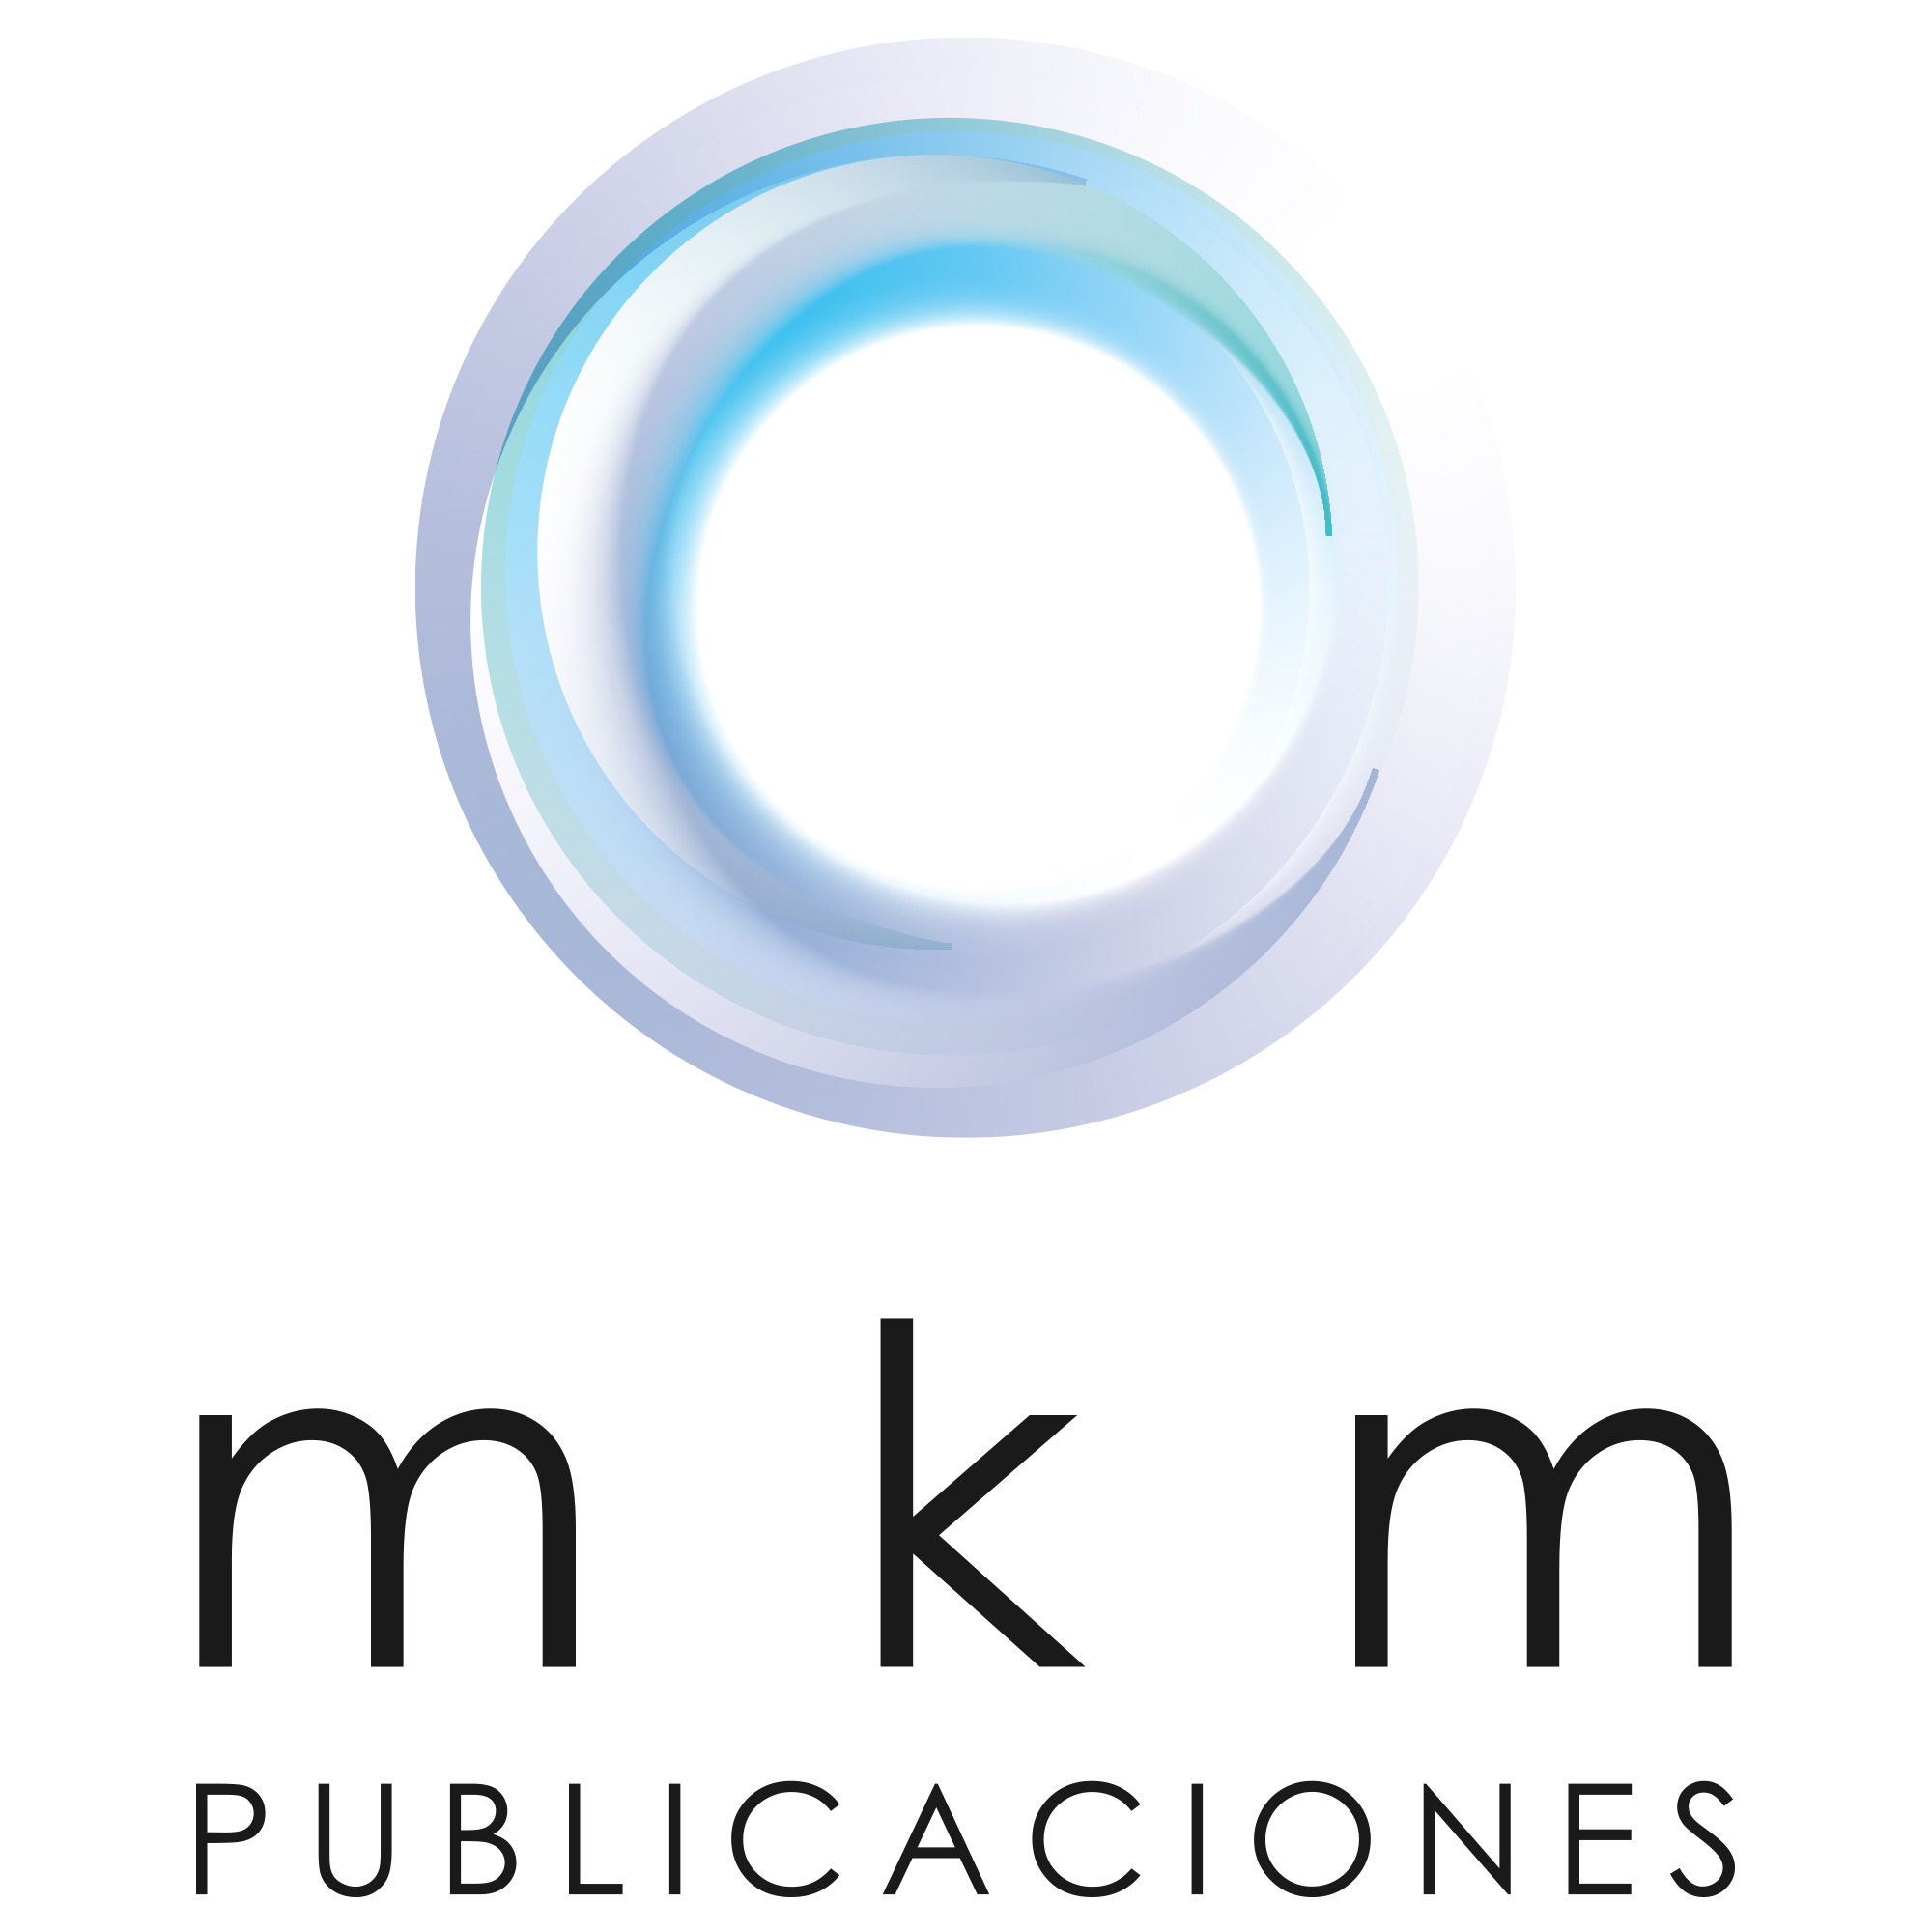 (c) Mkm-pi.com